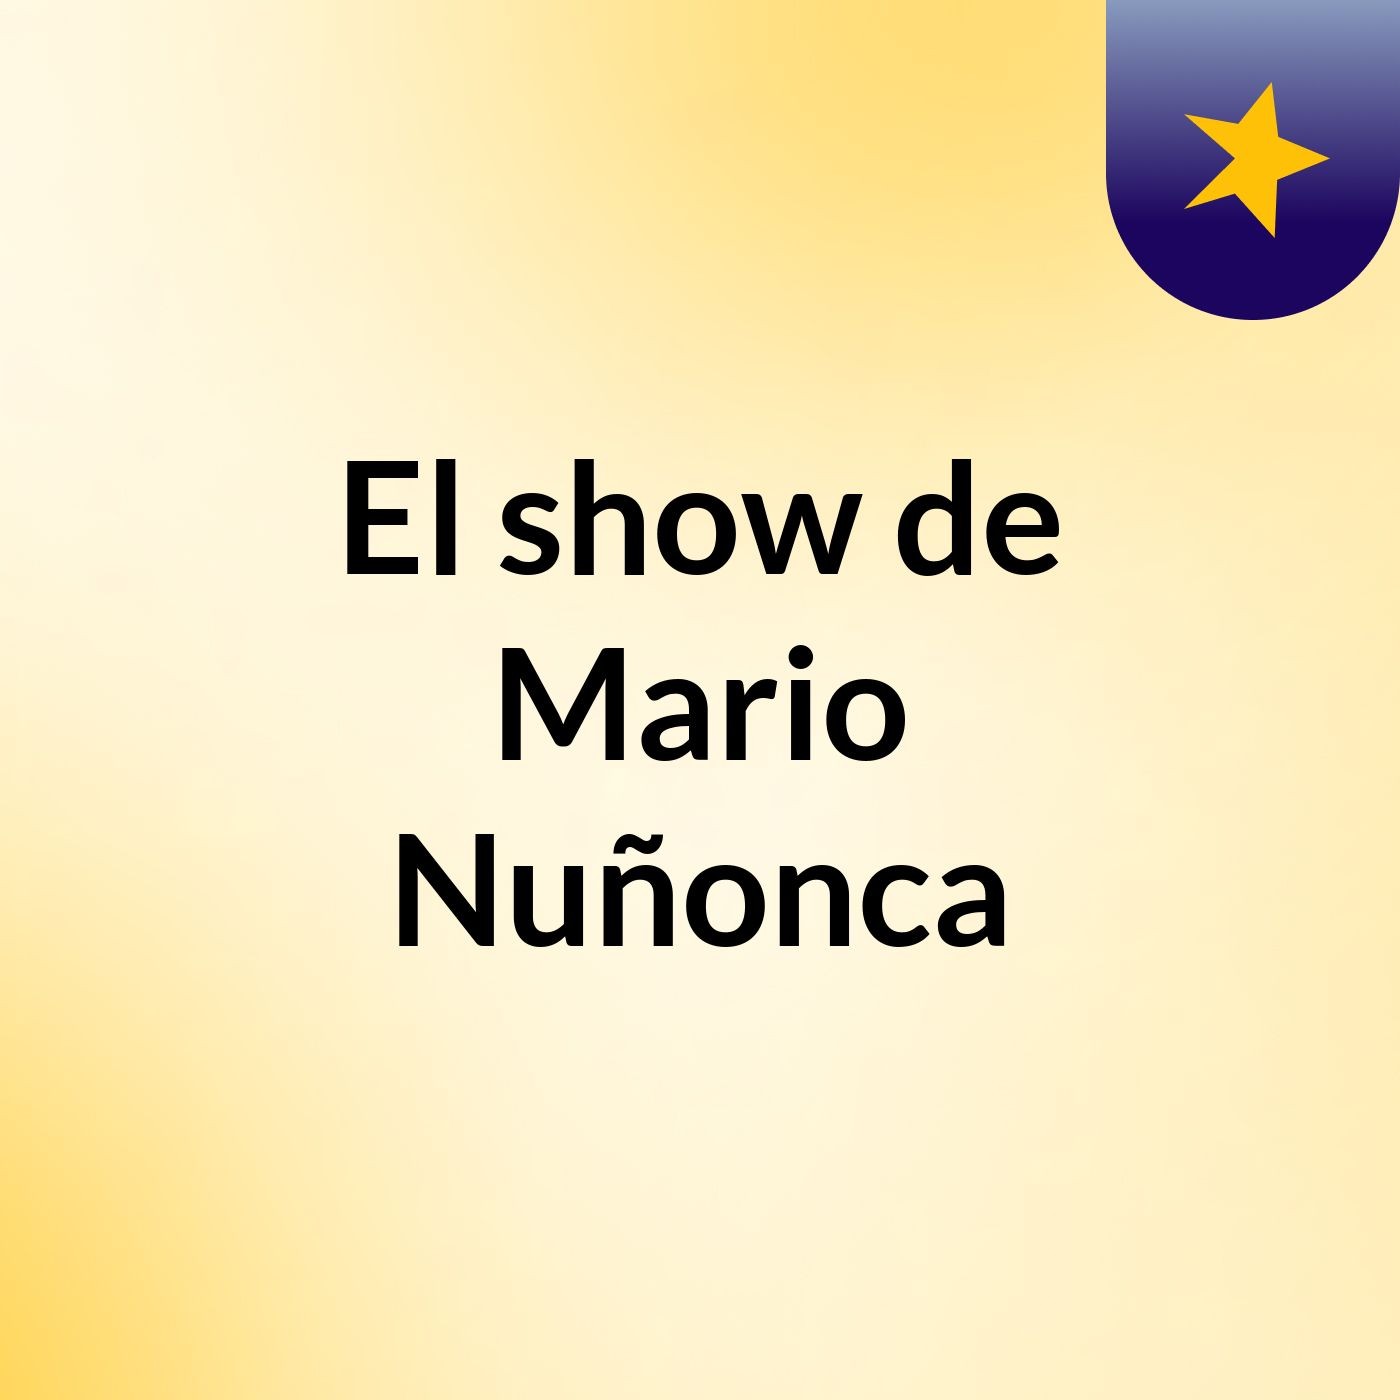 El show de Mario Nuñonca